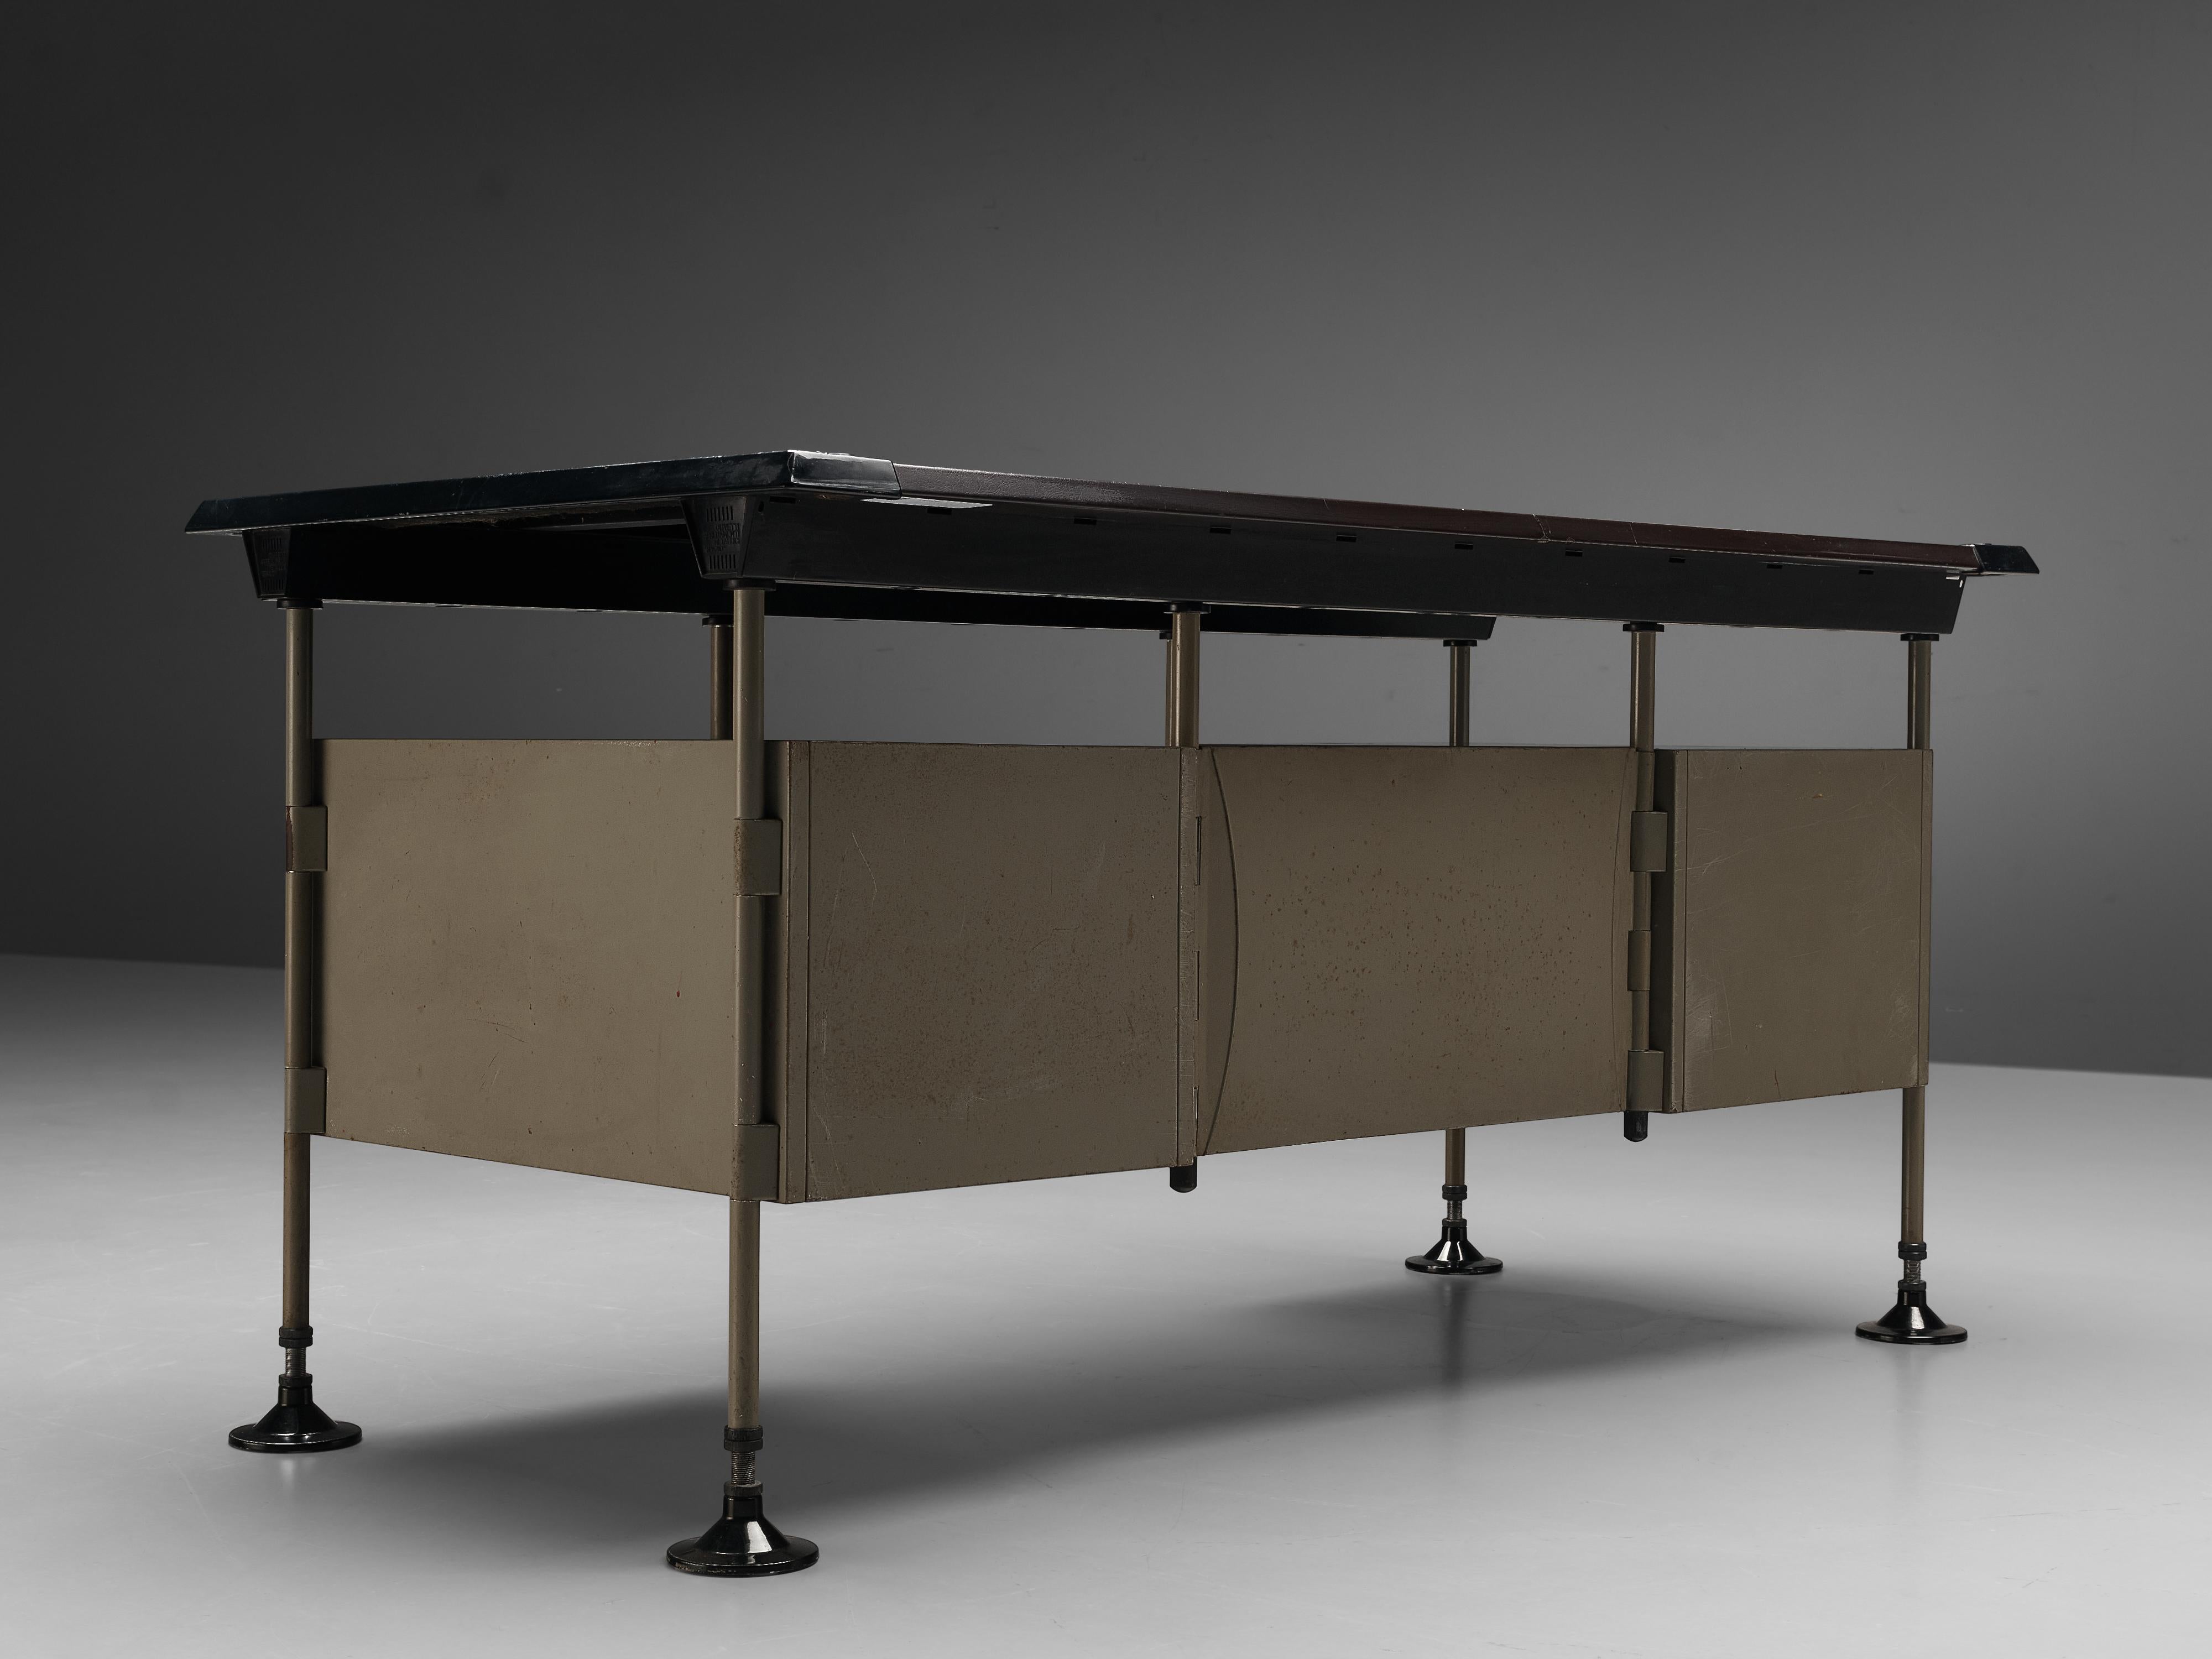 Italian Studio BBPR for Olivetti 'Spazio' Desk with Drawers